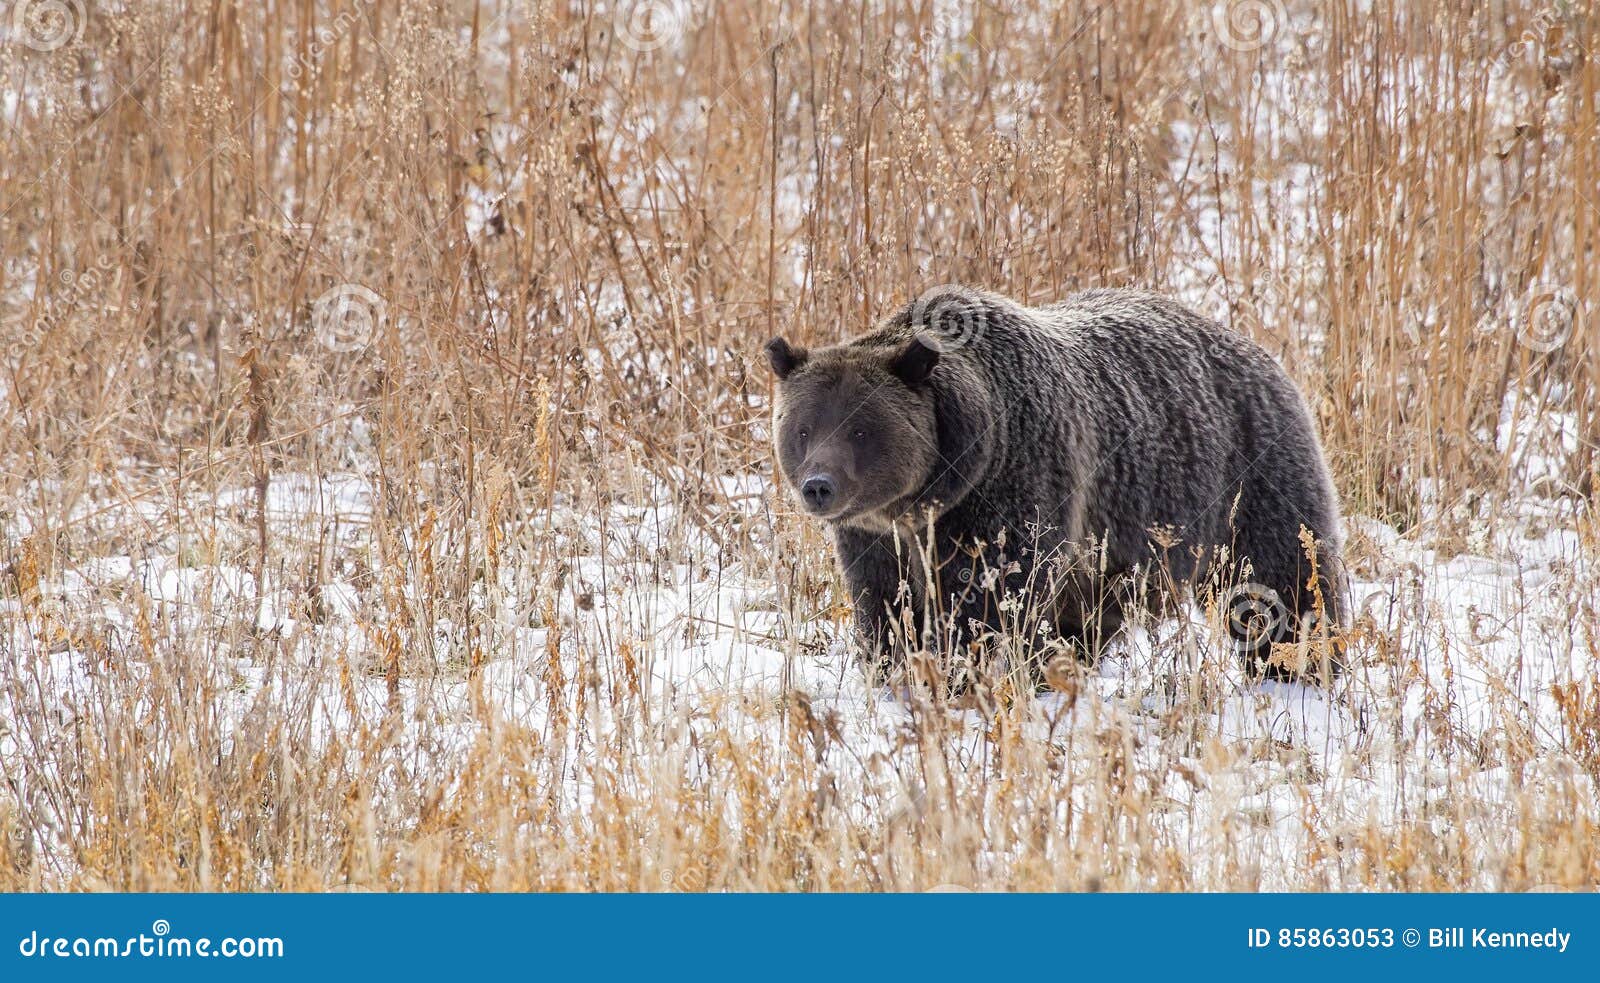 wild american grizzly bear ursus arctos